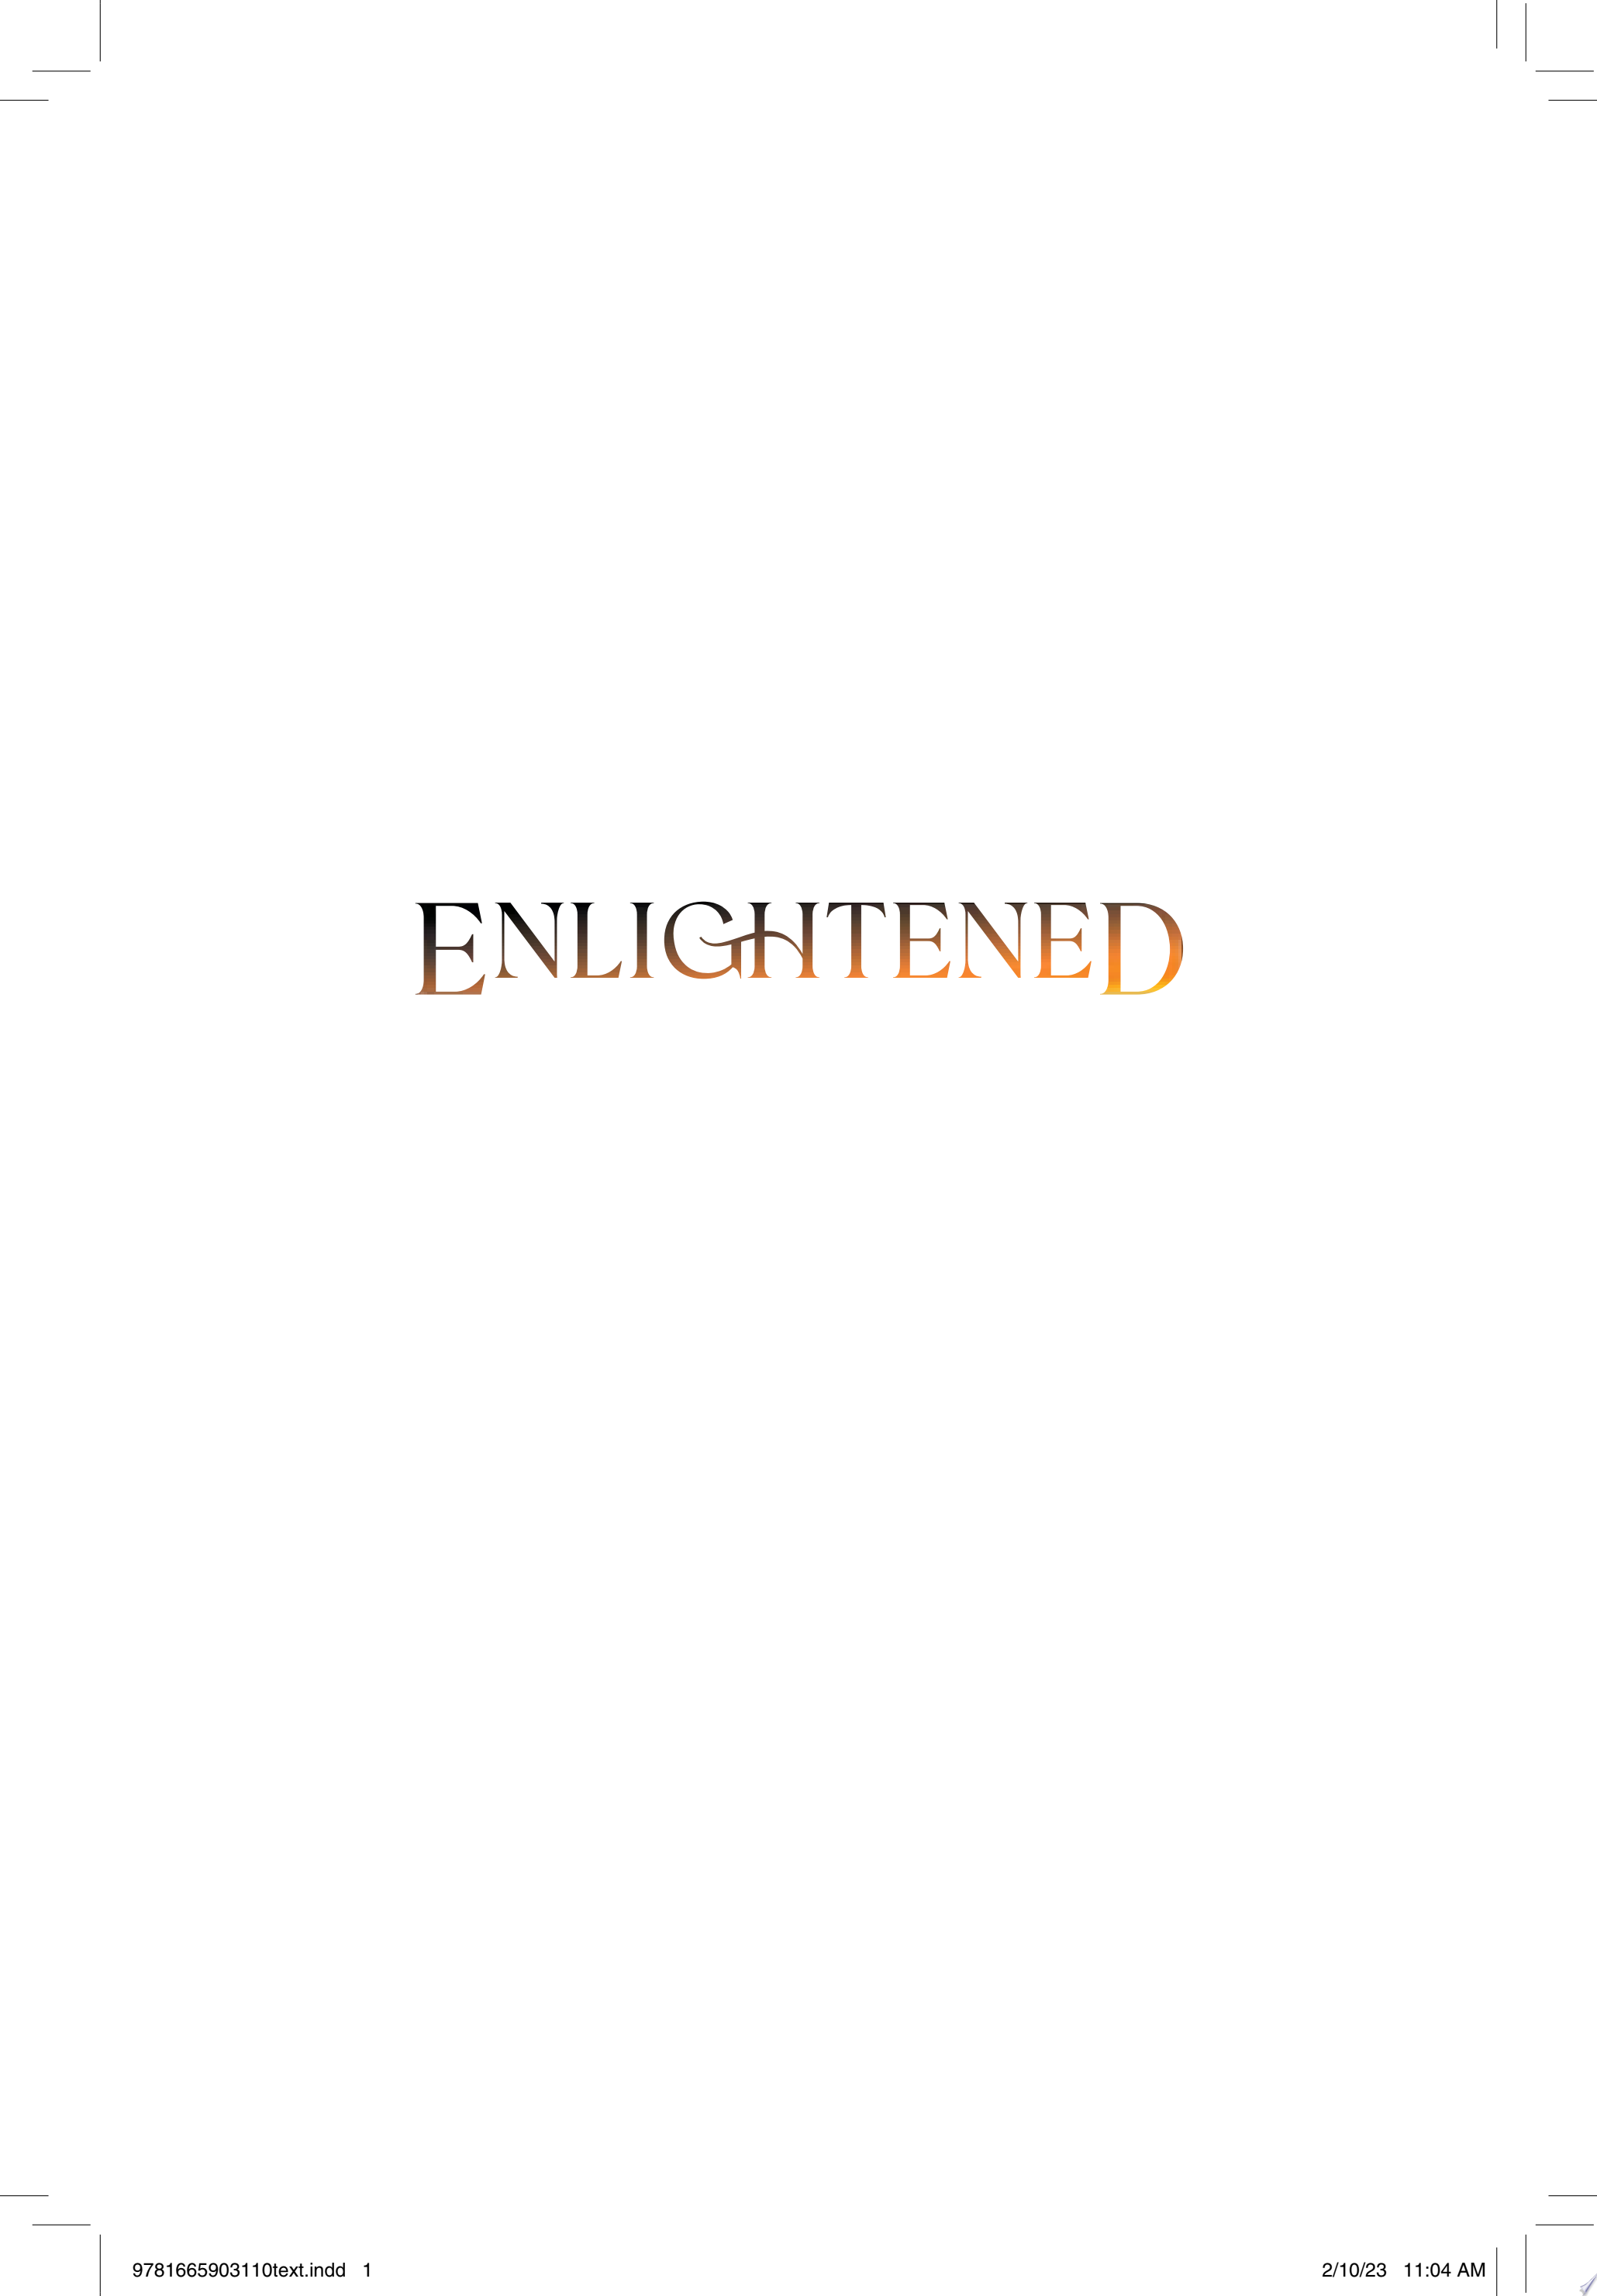 Image for "Enlightened"